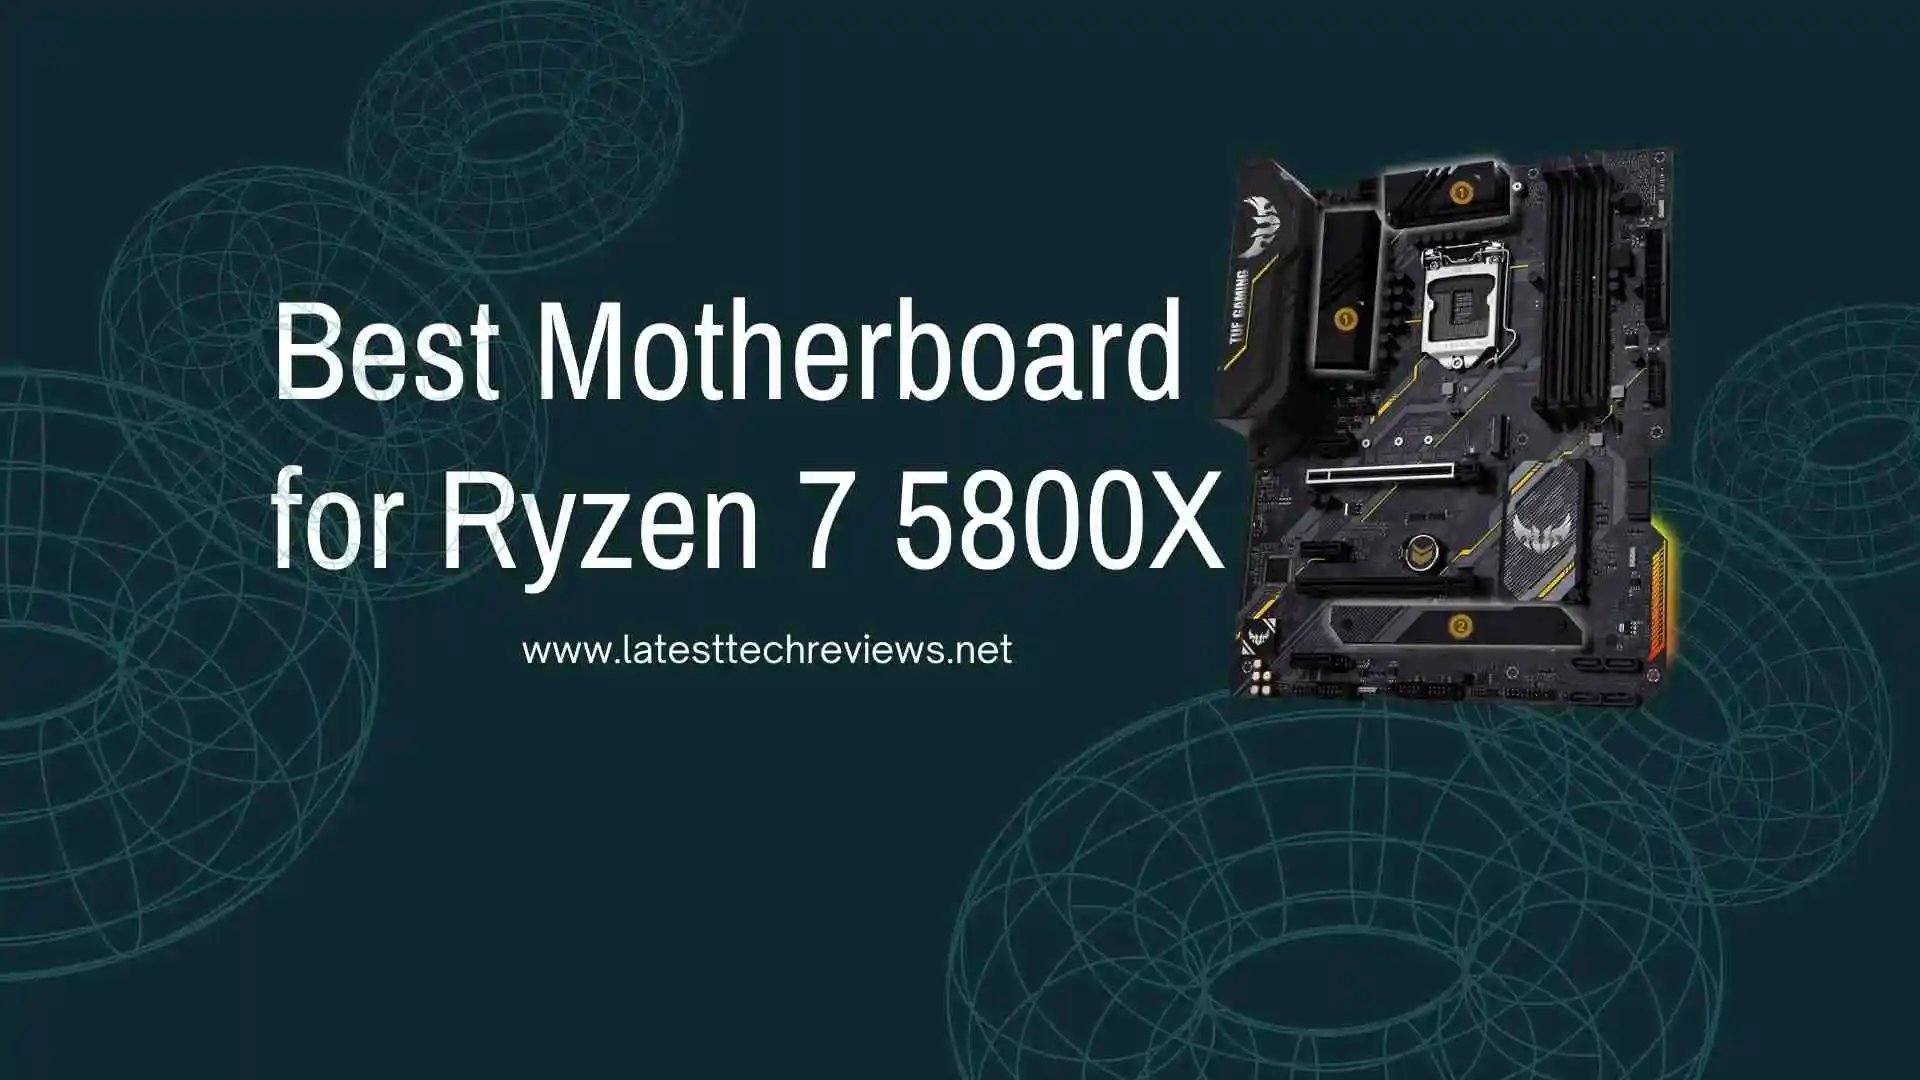 Best Motherboards for Ryzen 7 5800X in 2022